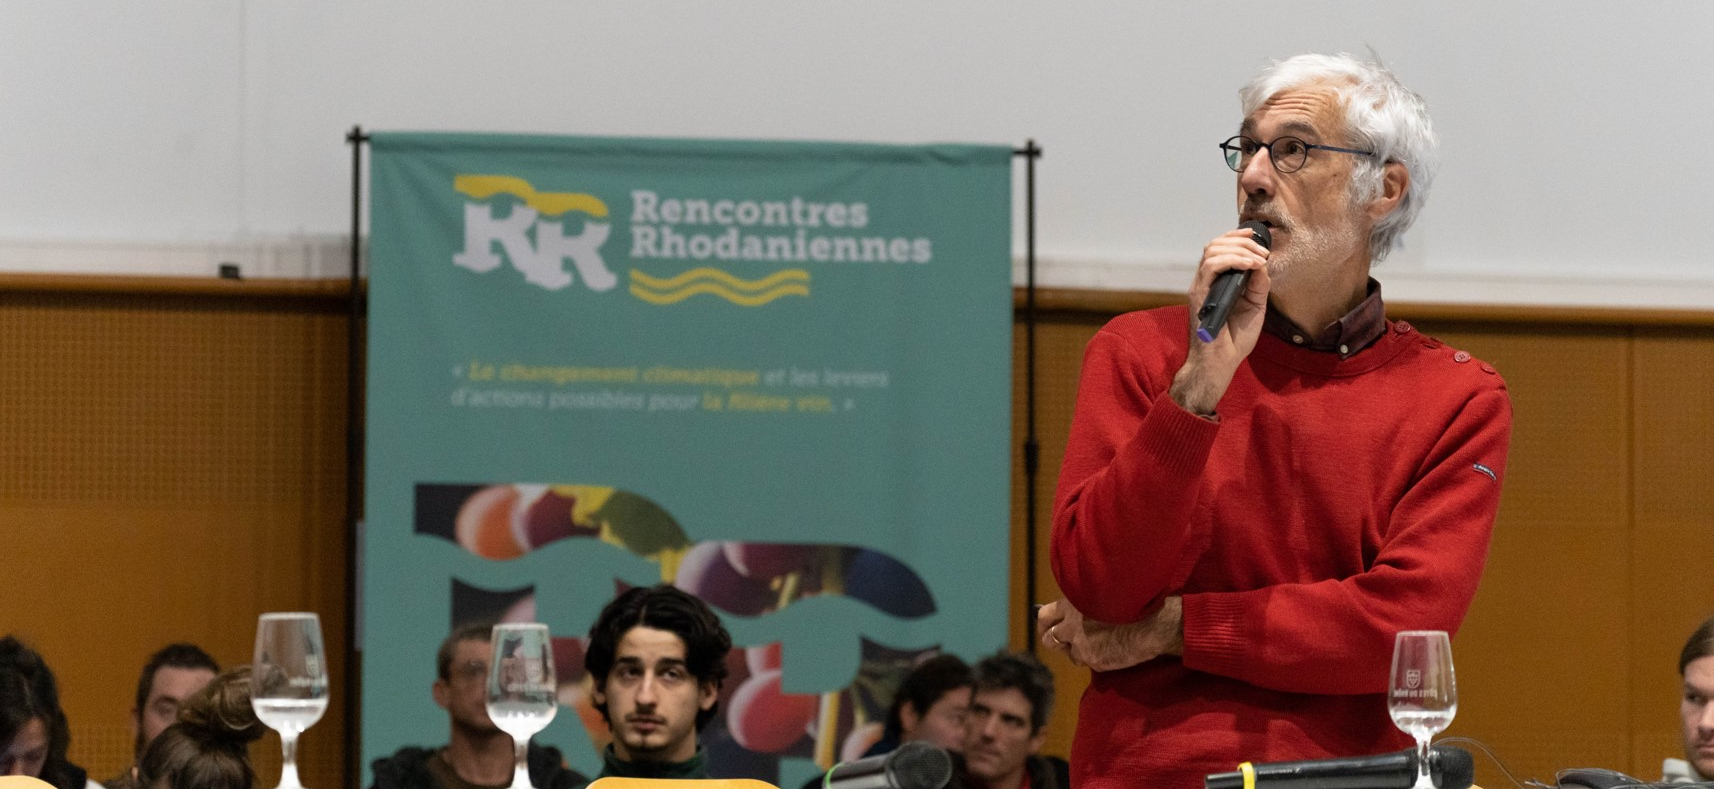 Rencontres Rhodaniennes - Conférence de Jean-Marc Touzard (INRAE)